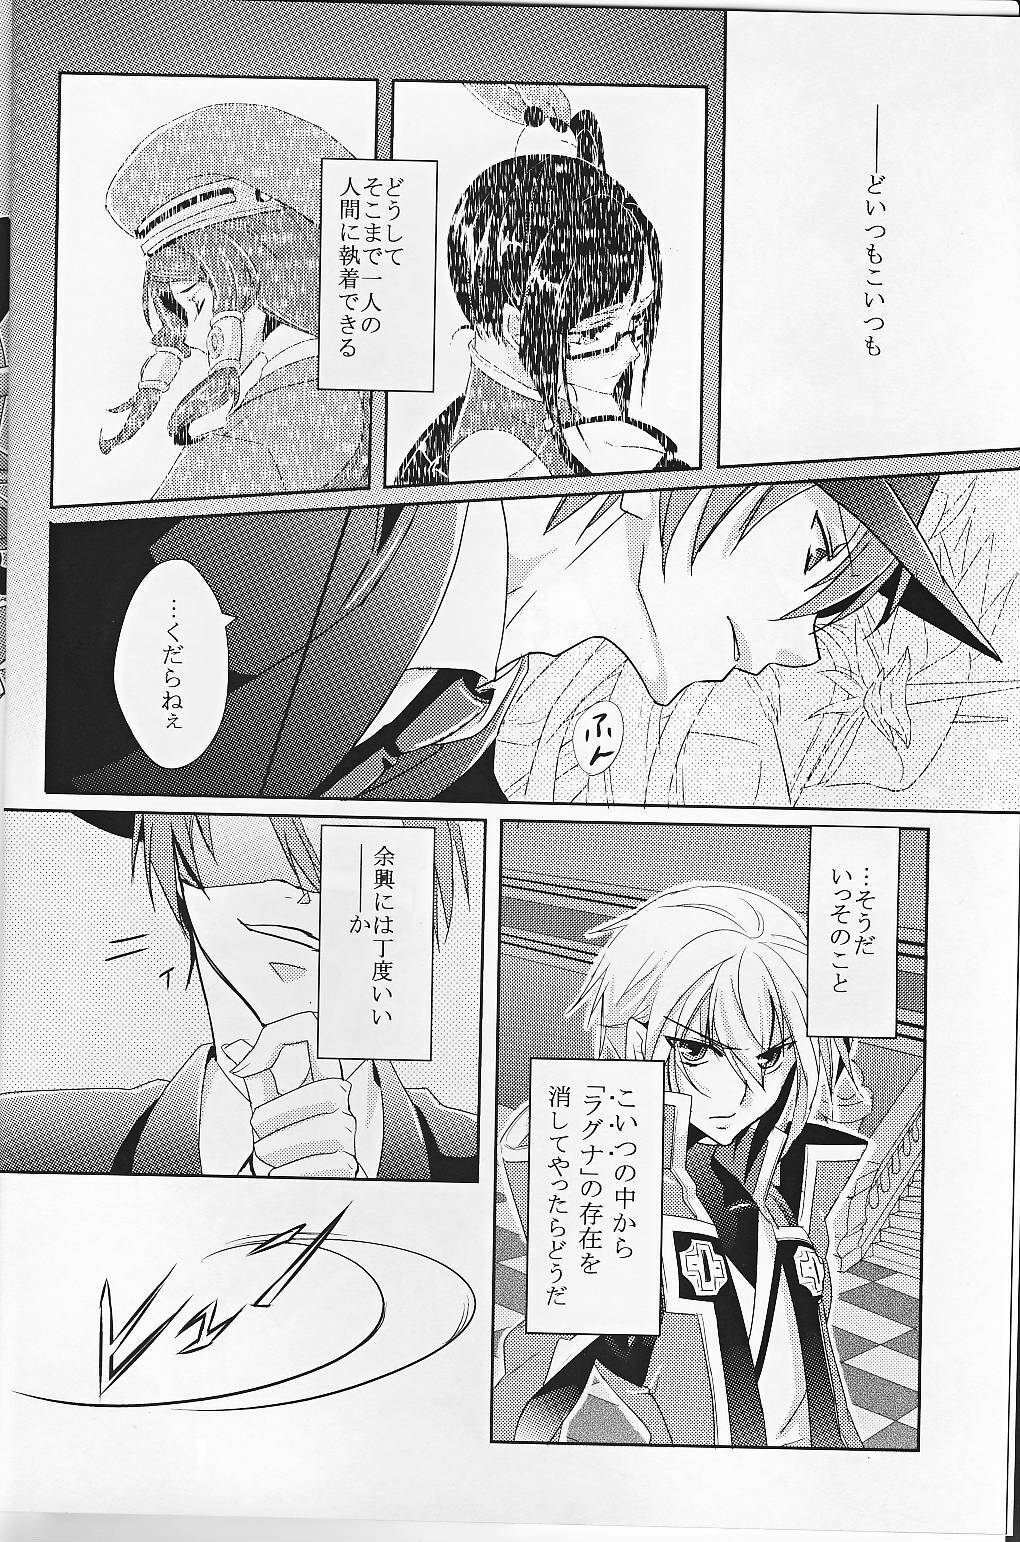 [smat. (Akatsuki Tomato)] Silly (BLAZBLUE) page 5 full